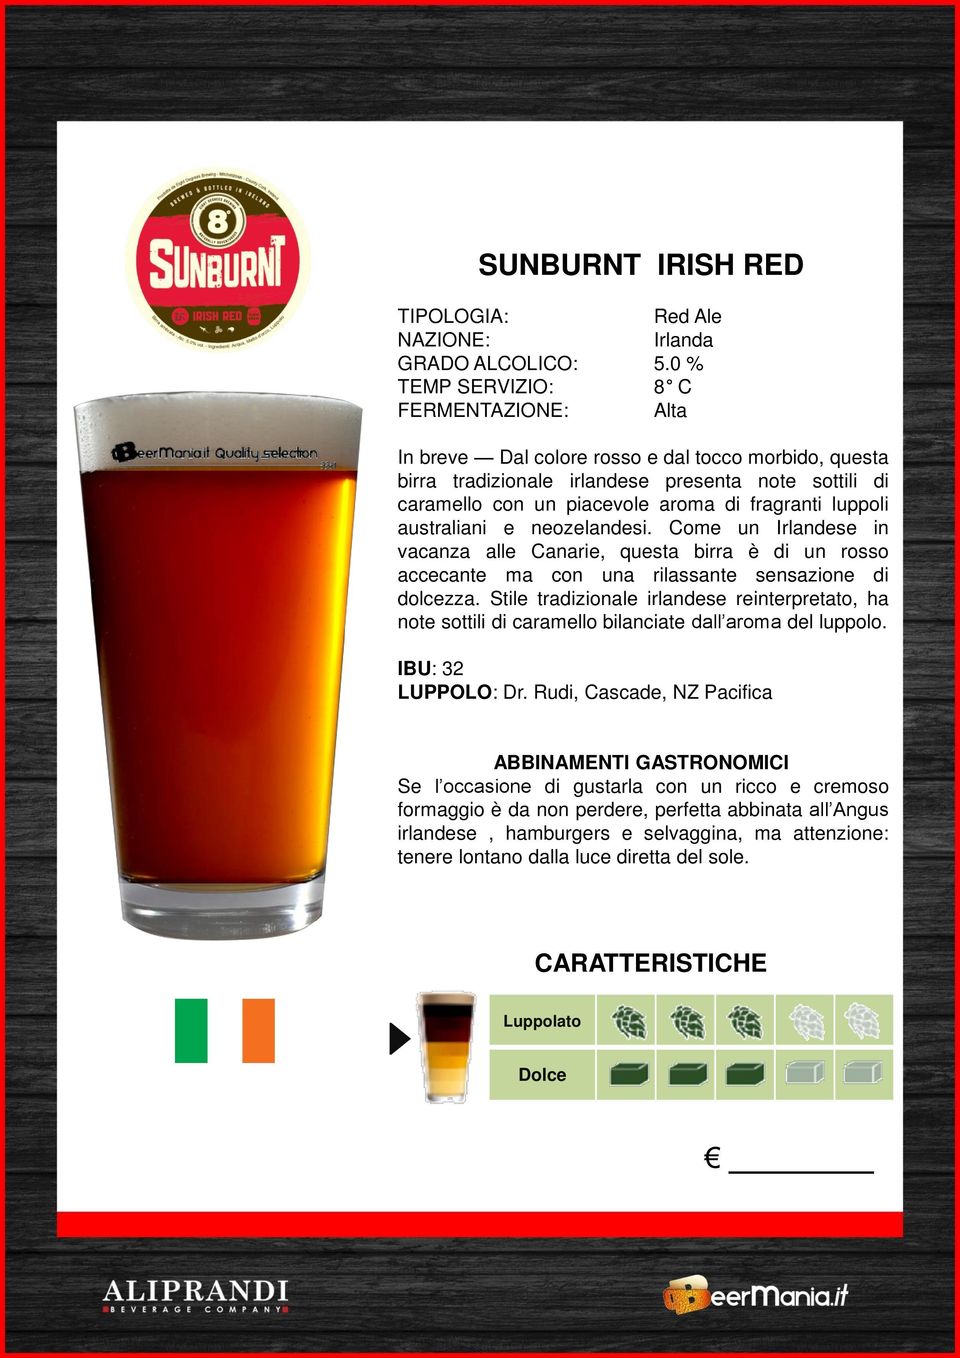 neozelandesi. Come un Irlandese in vacanza alle Canarie, questa birra è di un rosso accecante ma con una rilassante sensazione di dolcezza.